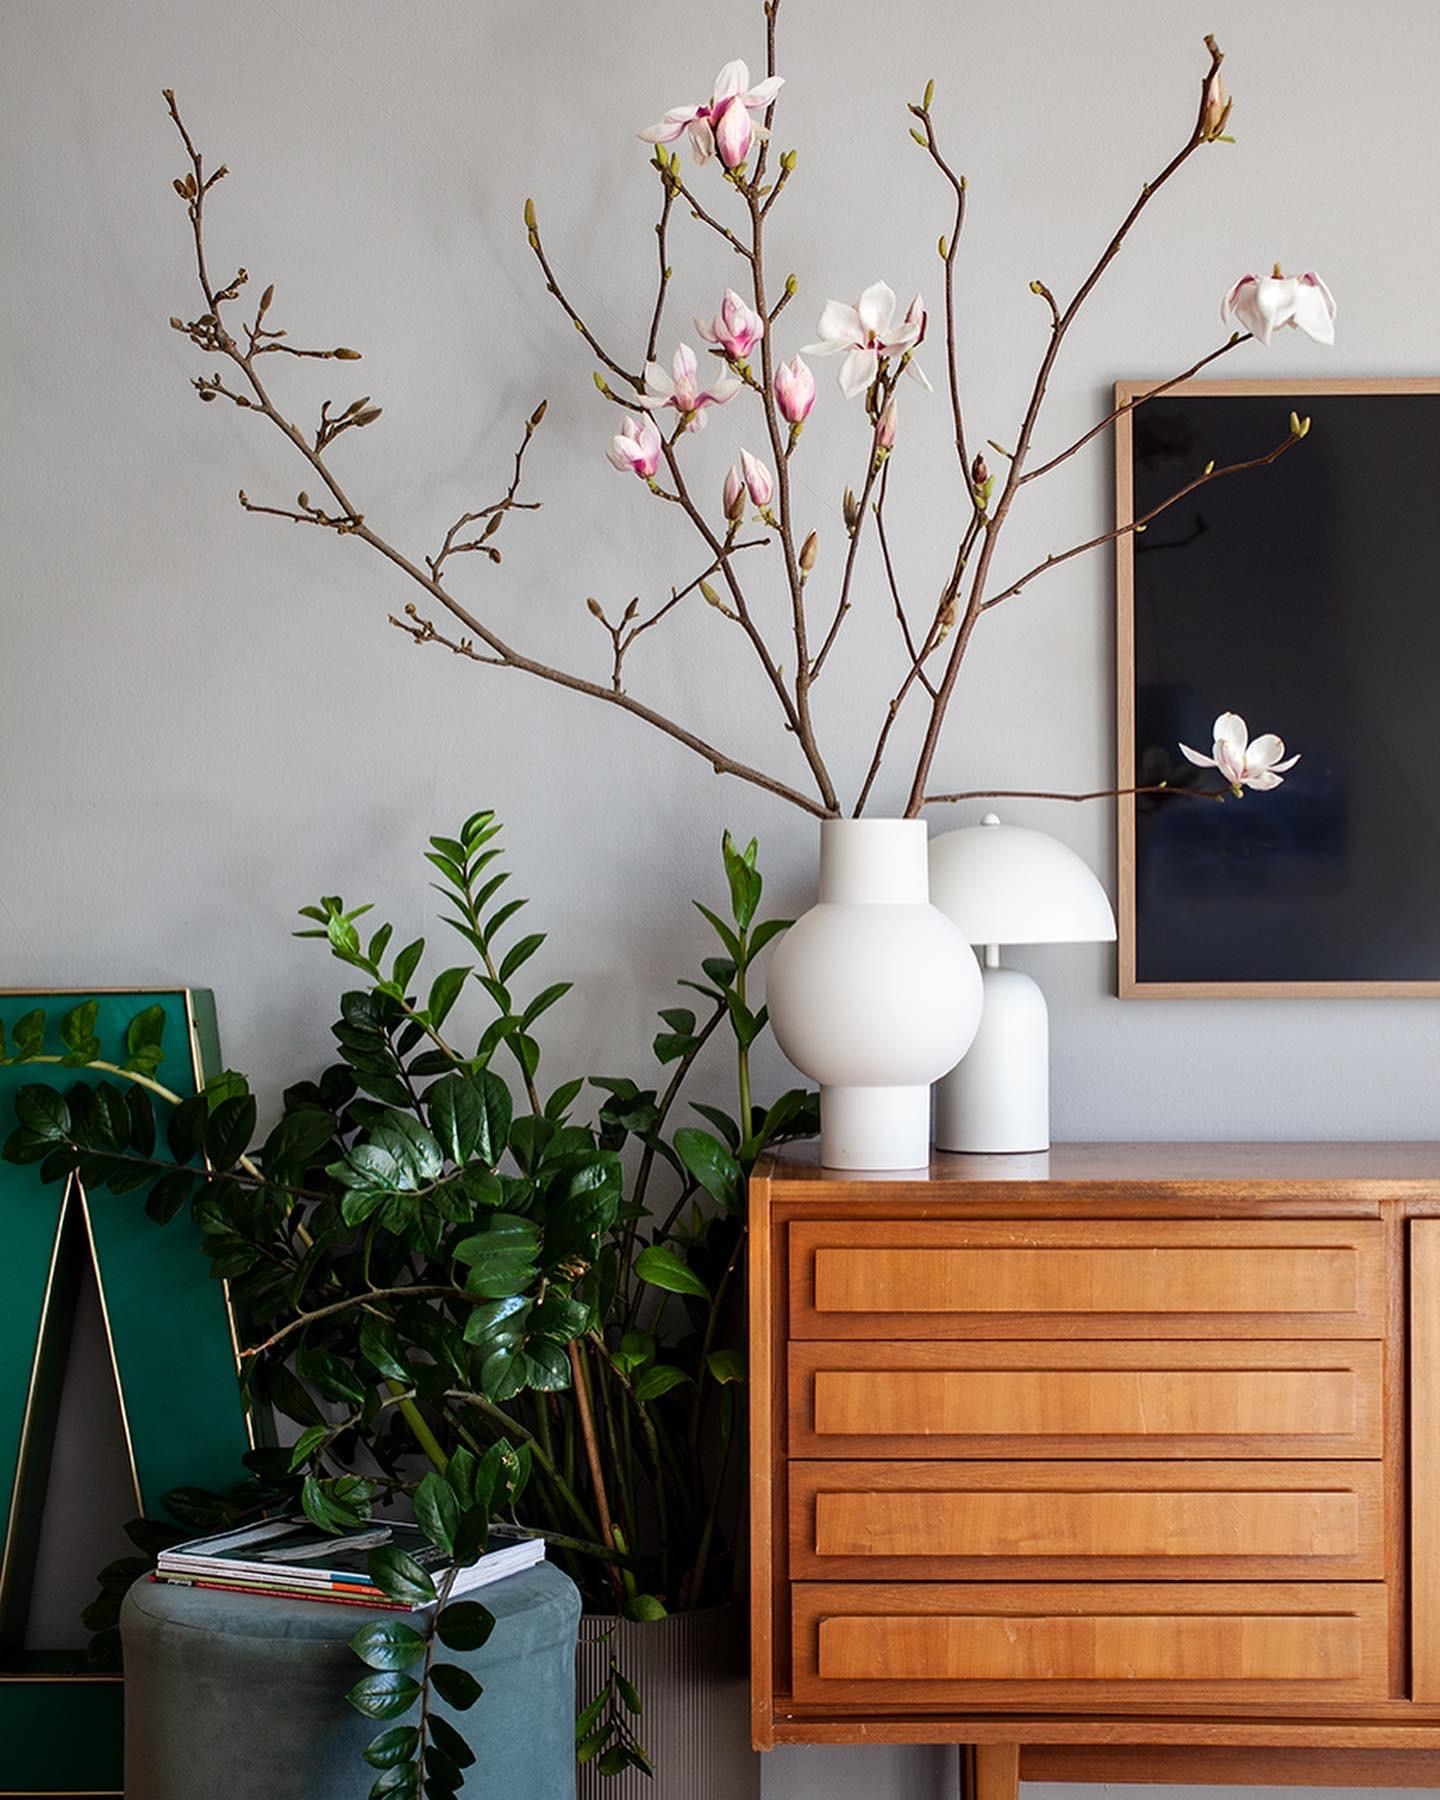 Die Magnolien gehen auf, mein Herz auch!

#Magnolien #Wohnzimmer
 #Sideboard #Vintage